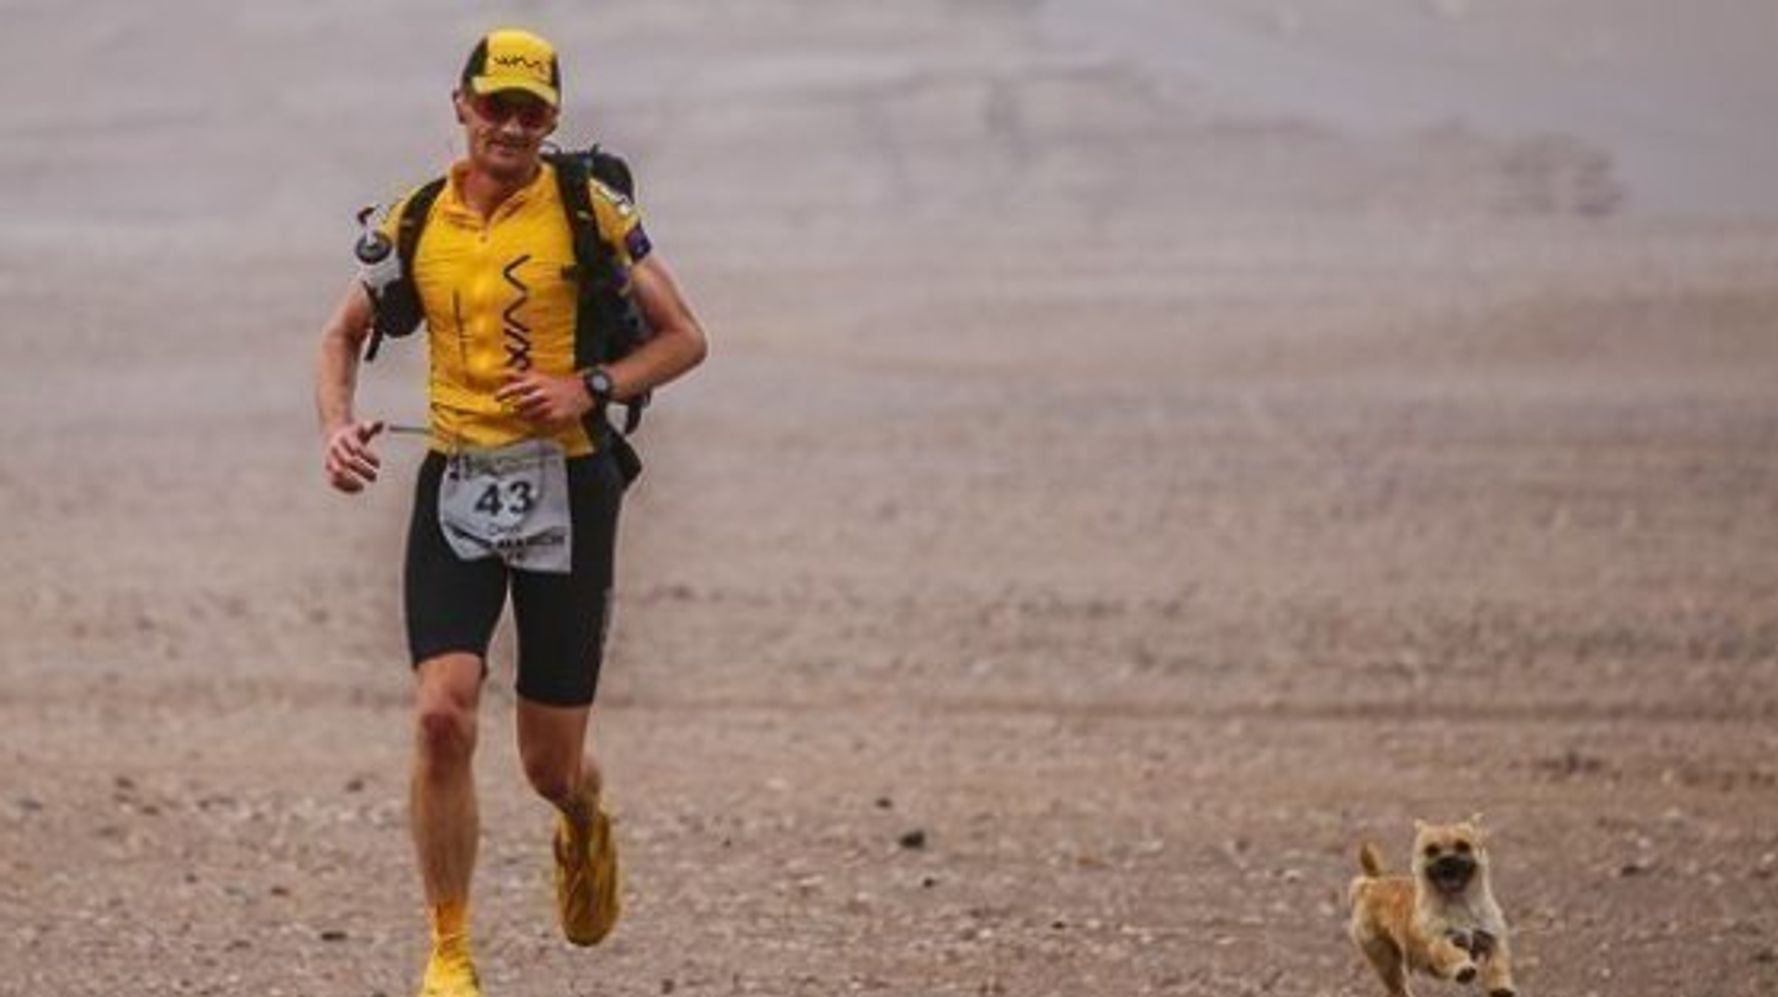 ゴビ砂漠マラソンで 1匹の犬はランナーを追って走った 本当にあった運命の出会い ハフポスト Life